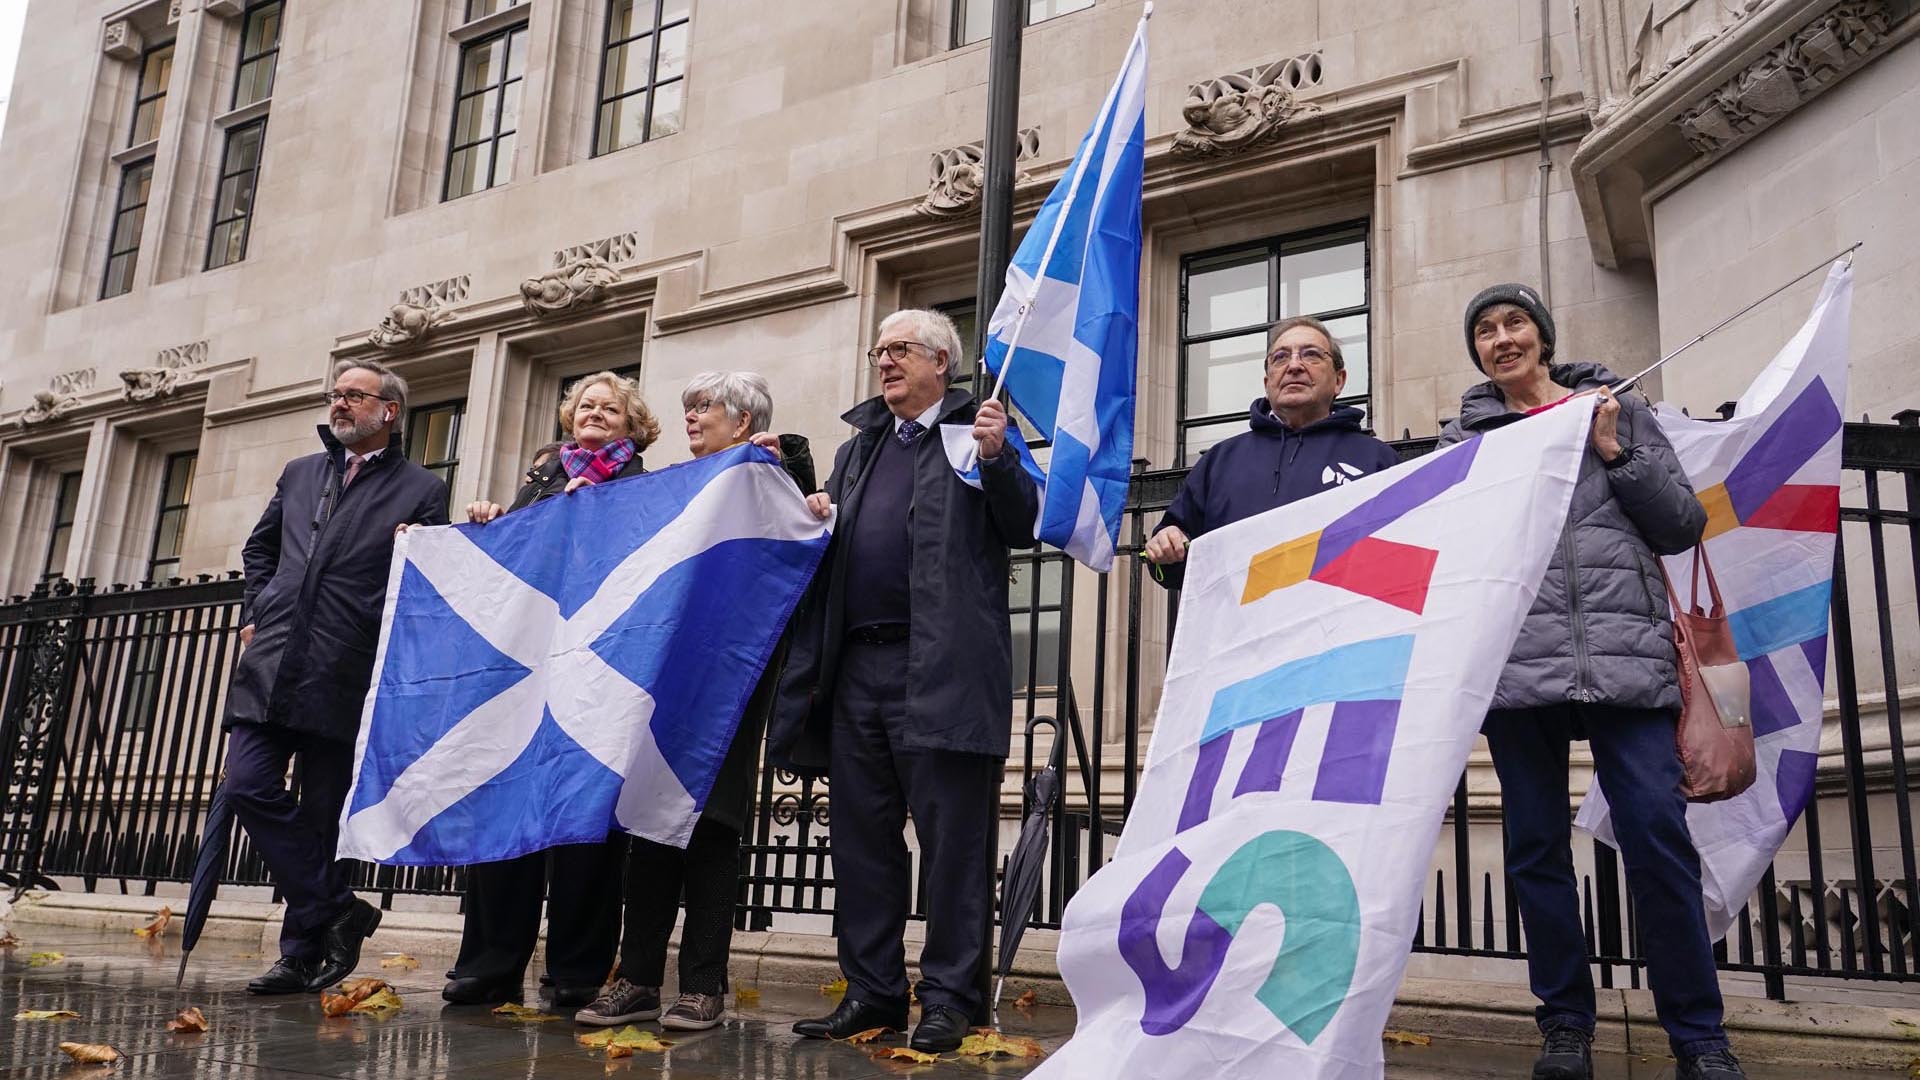 Manifestantes sostienen banderas escocesas frente a la Corte Suprema en Londres (AP Photo/Alberto Pezzali)
